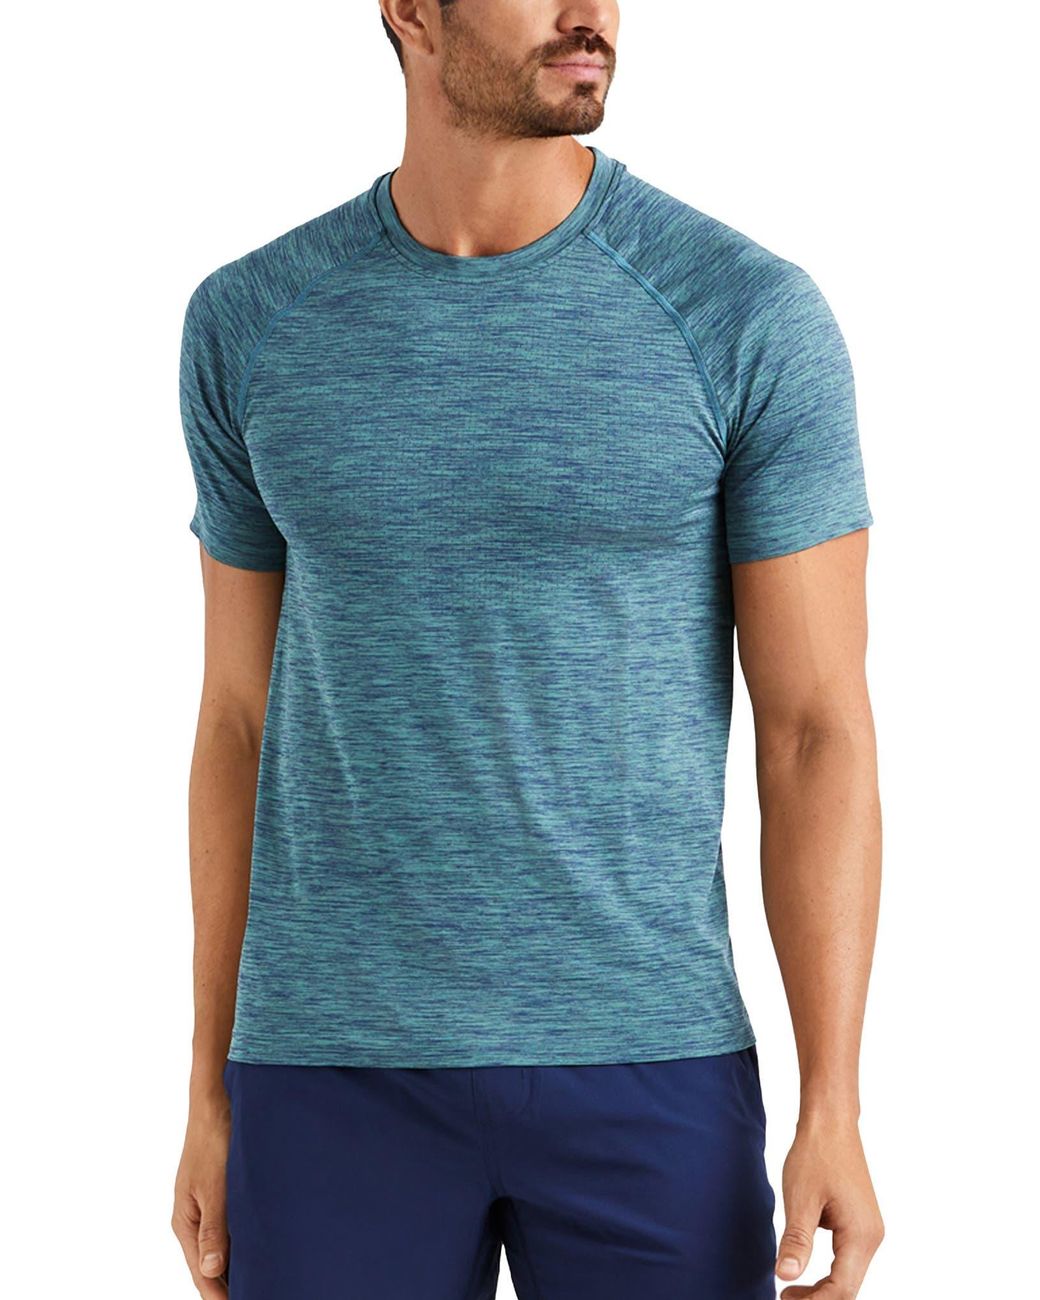 Rhone Reign Tech Short Sleeve T-shirt in Blue for Men - Lyst